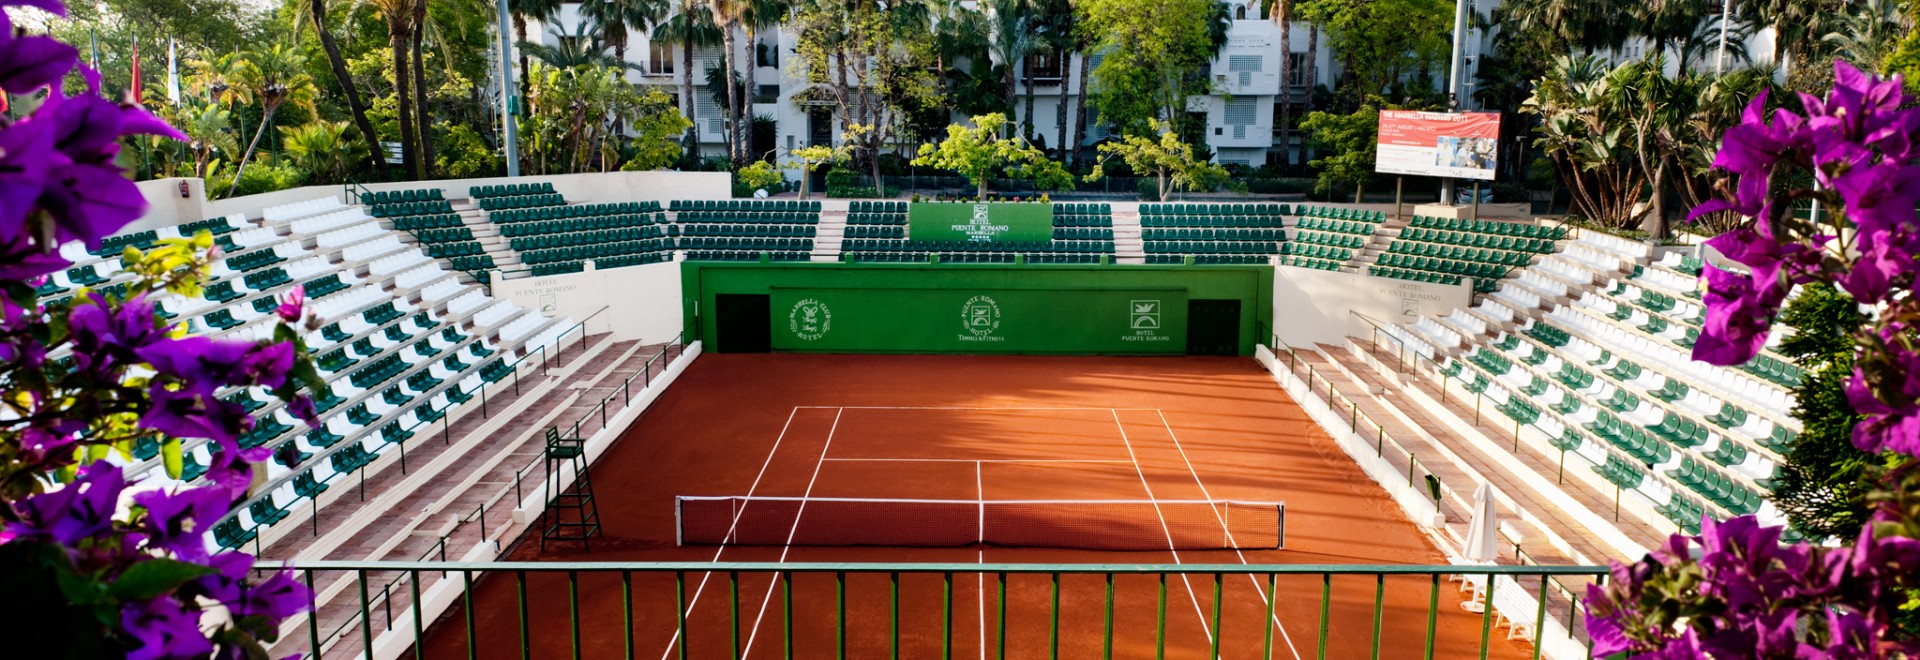 Luxury Tennis Escape - Puente Romano Beach Resort, Marbella